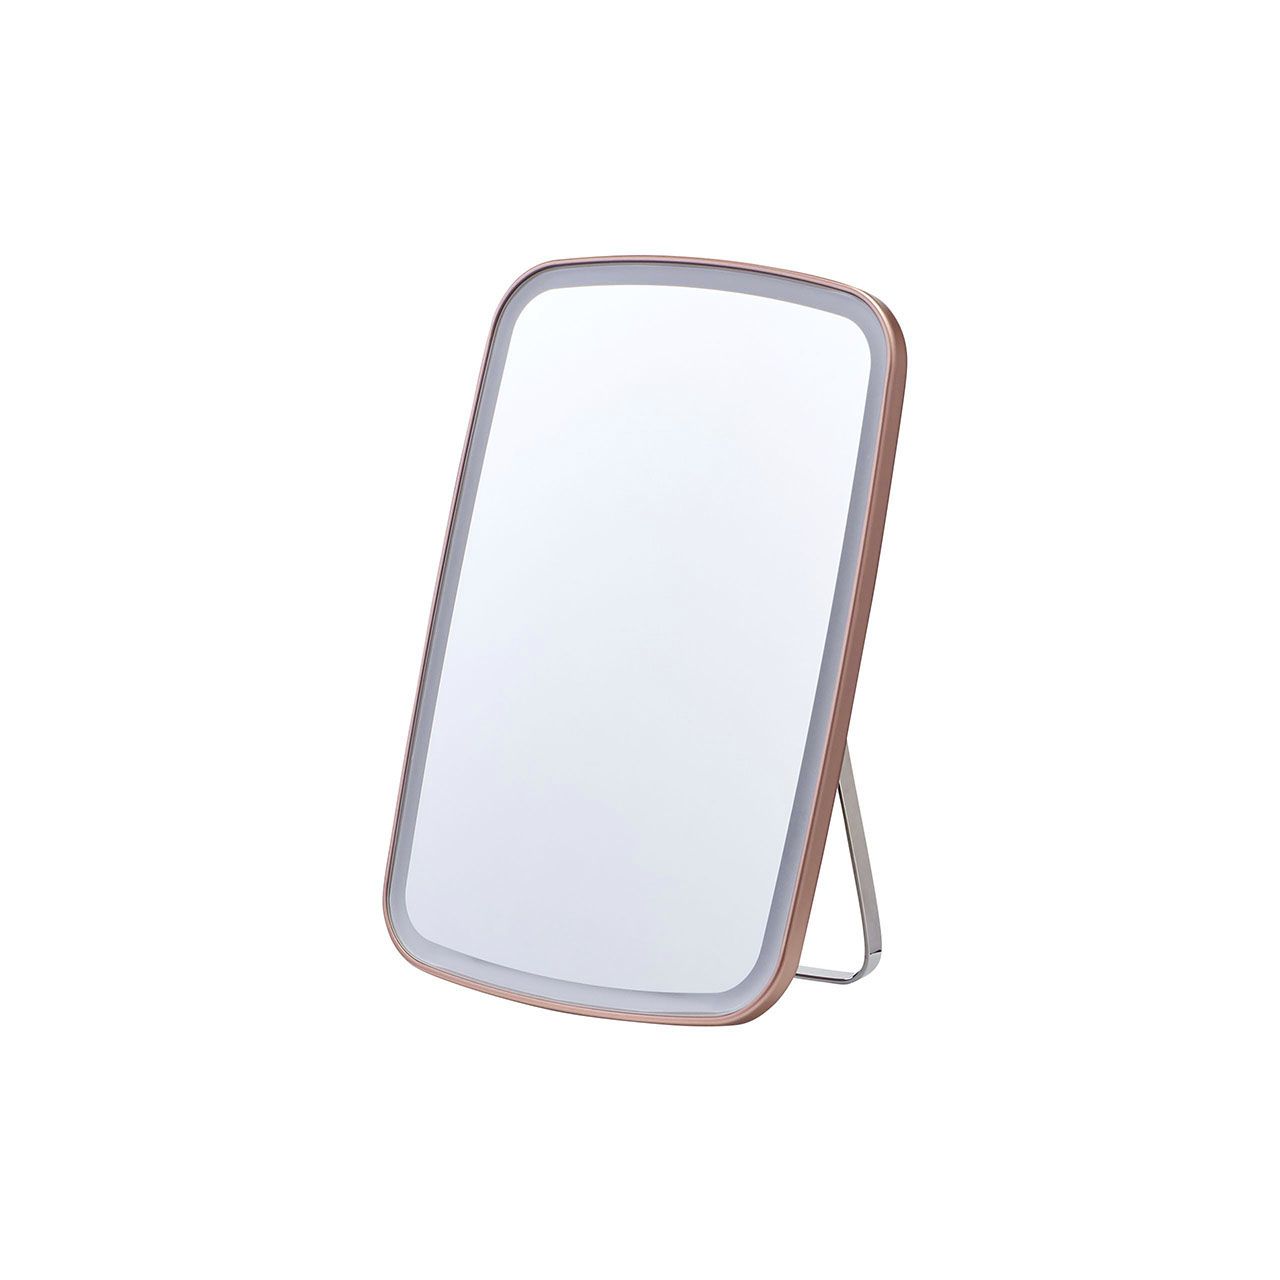 コイズミ LEDミラー ピンク KBE3190P ココニアル 拡大鏡 鏡 卓上ミラー スタンドミラー メイク 化粧鏡 ライト付き 卓上鏡 5倍 KOIZUMI